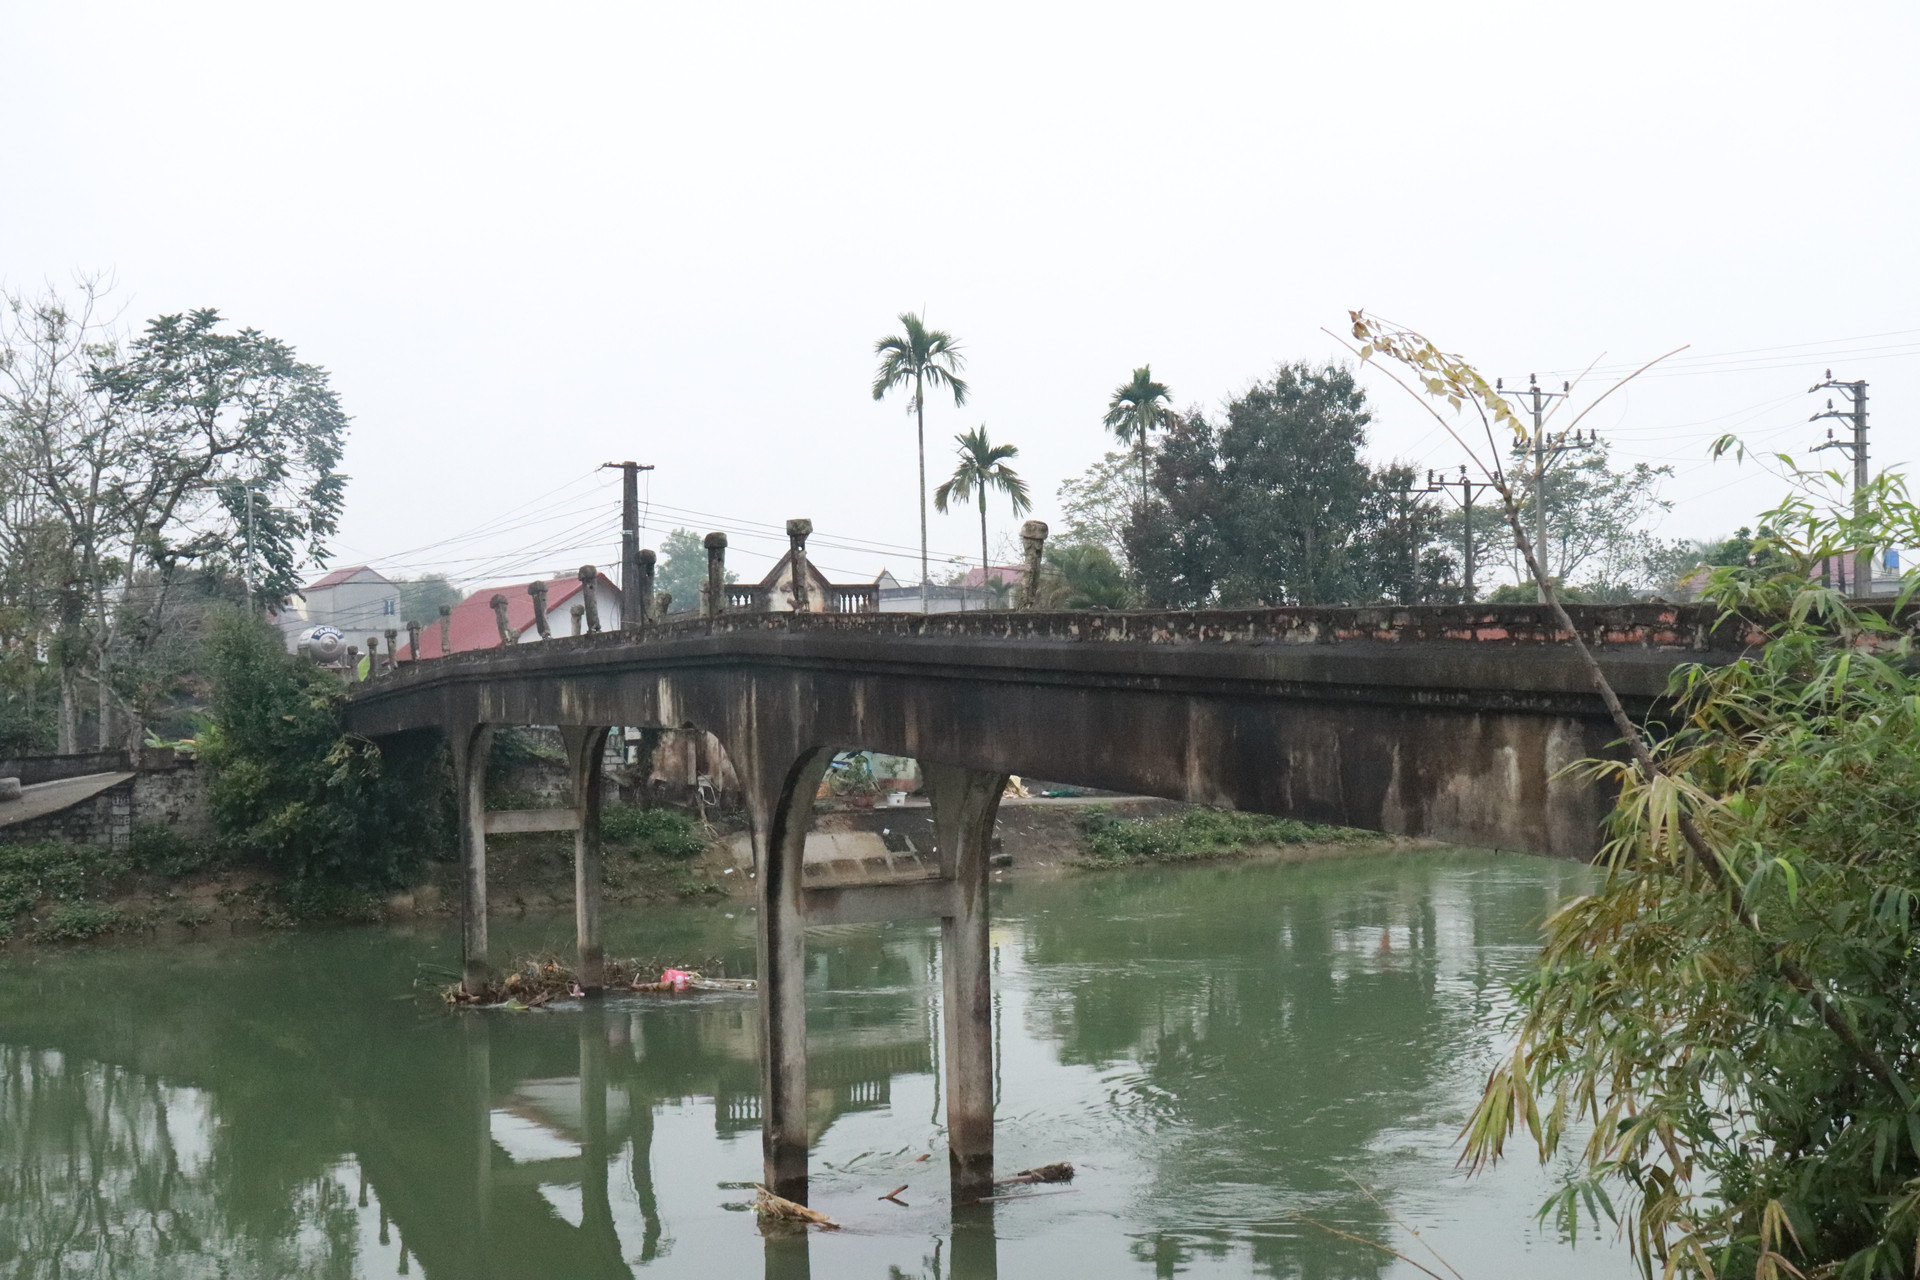 Theo lời người dân địa phương, cầu Quần Đội (xã Thọ Diên, huyện Thọ Xuân Thanh Hoá) có tuổi đời đã hơn 100 năm. Cầu này có chiều dài khoảng 40m, rộng khoảng 1m6, là điểm nối giữa hai xã Thọ Diên và Xuân Hưng.